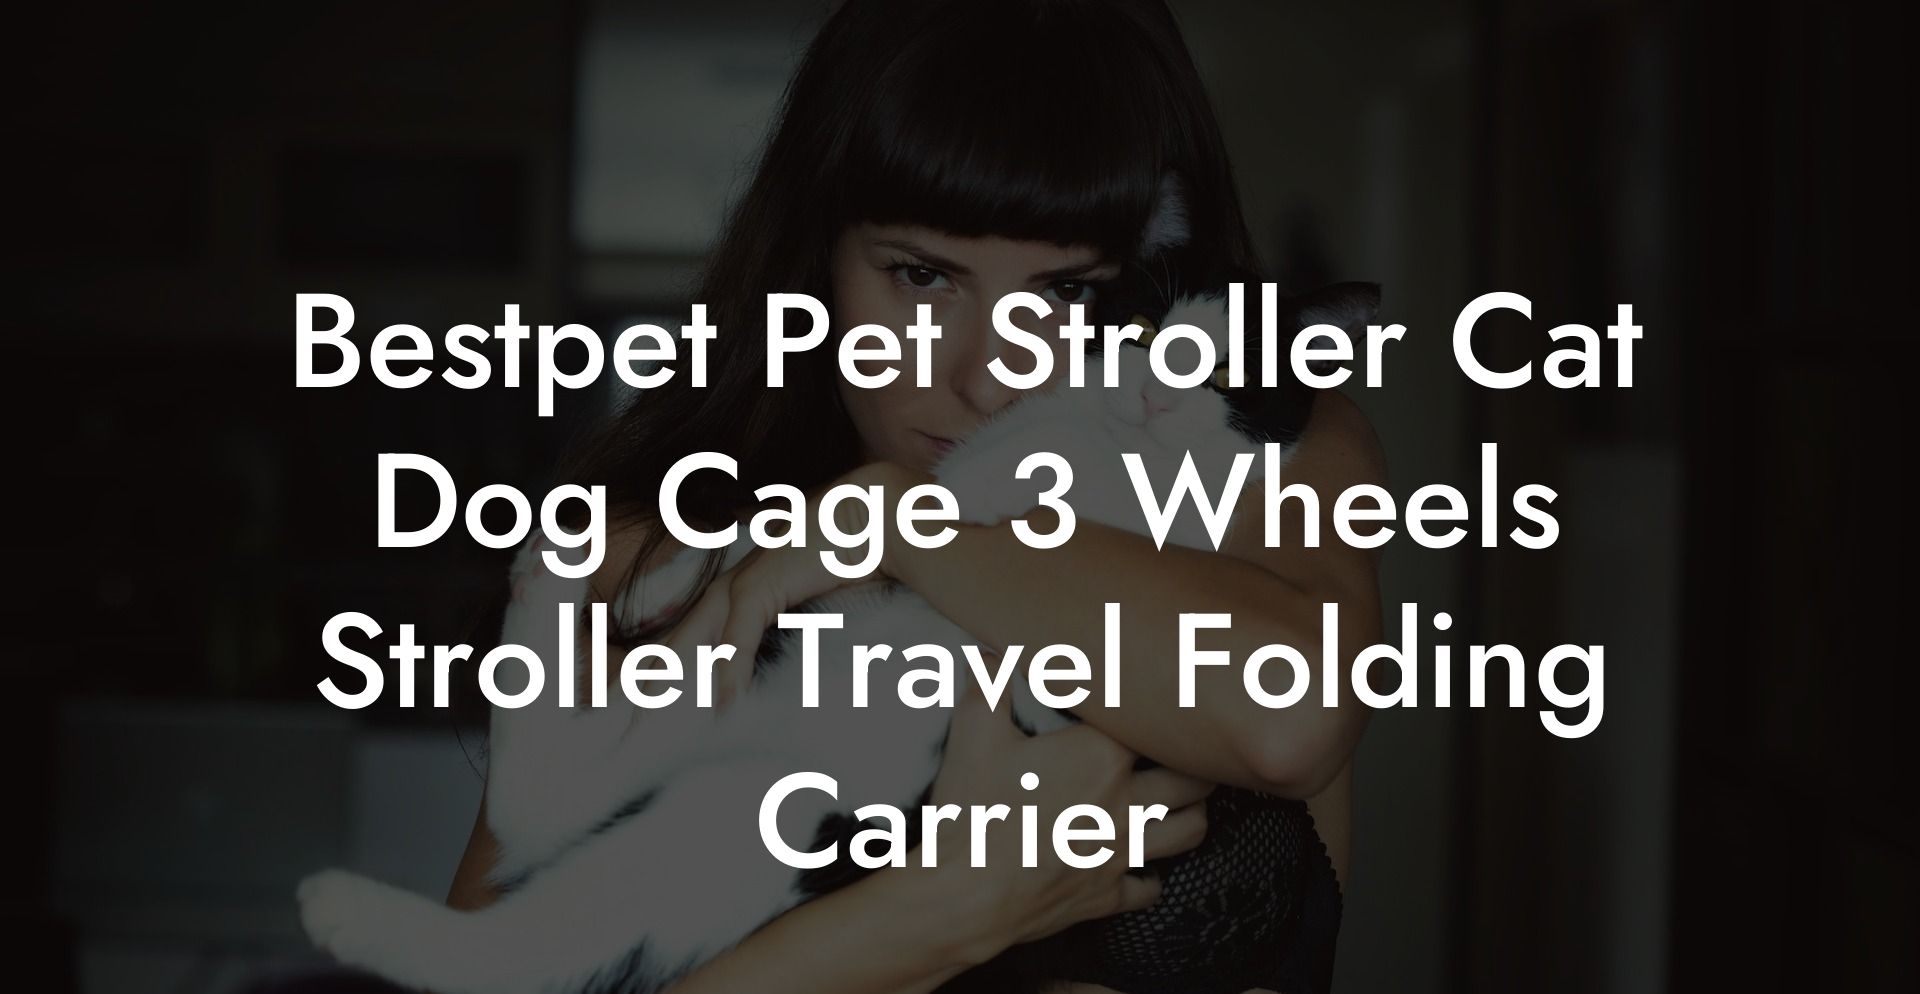 Bestpet Pet Stroller Cat Dog Cage 3 Wheels Stroller Travel Folding Carrier